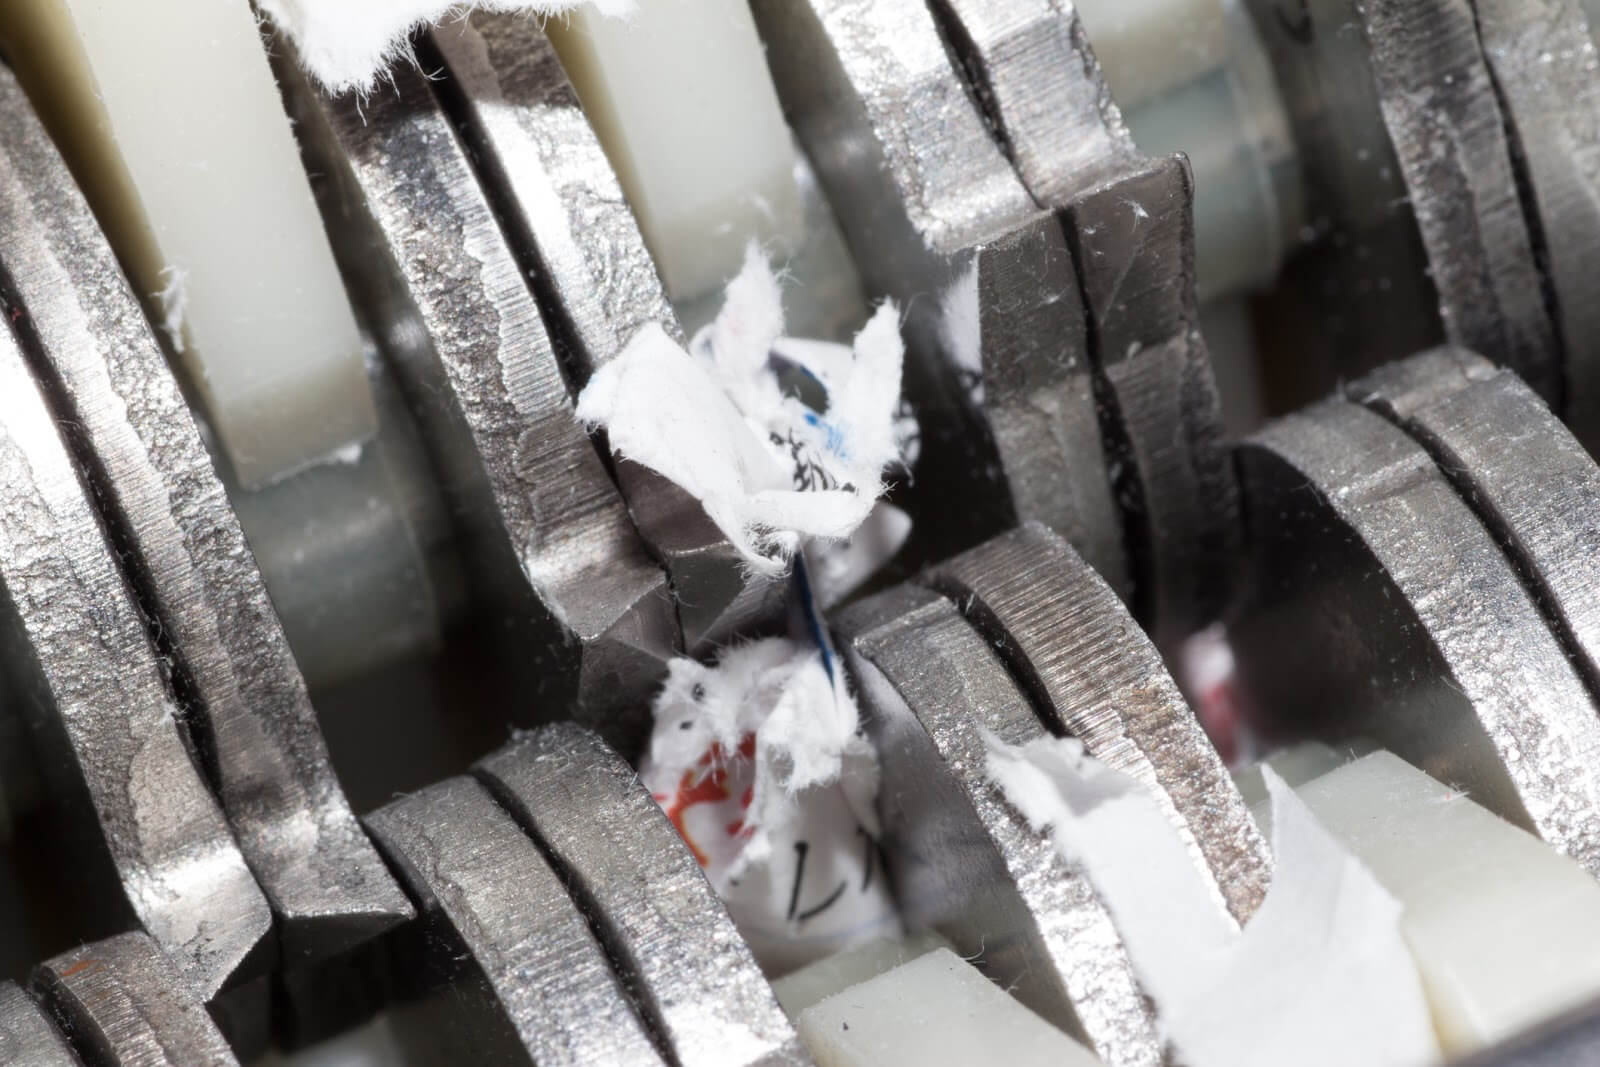 Jammed shredder scraps between paper shredder blades